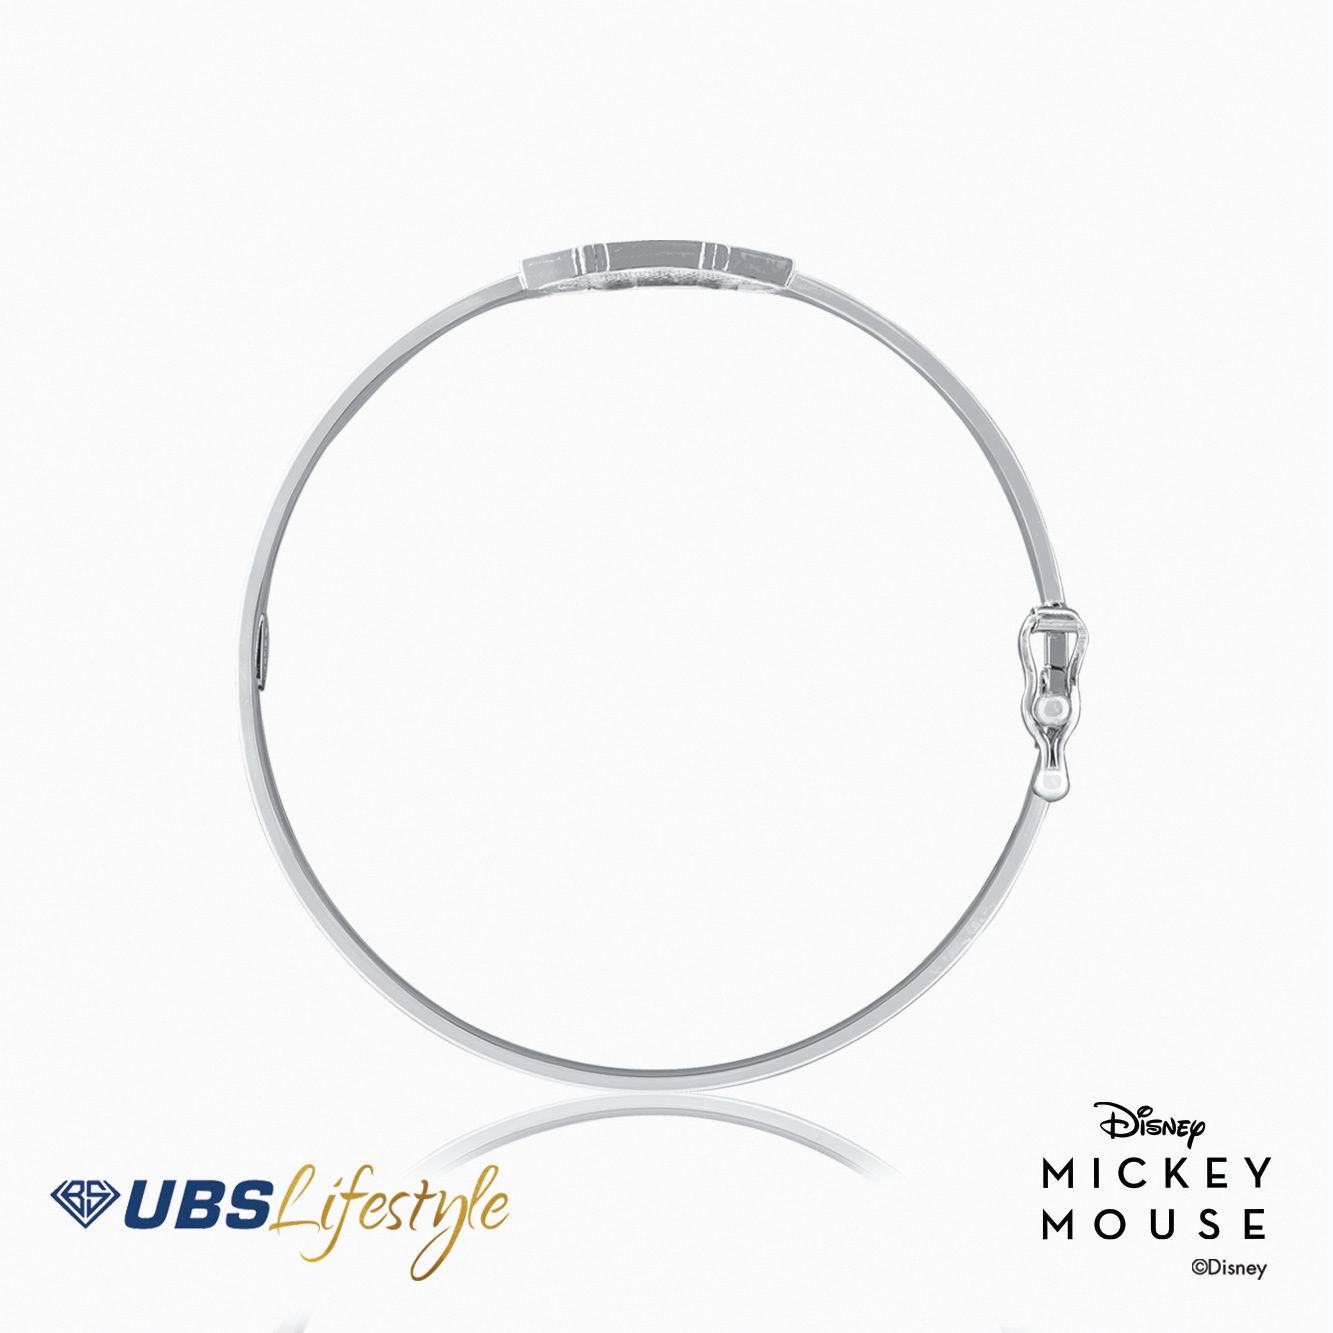 UBS Gelang Emas Bayi Disney Mickey Mouse - Vgy0115 - 17K